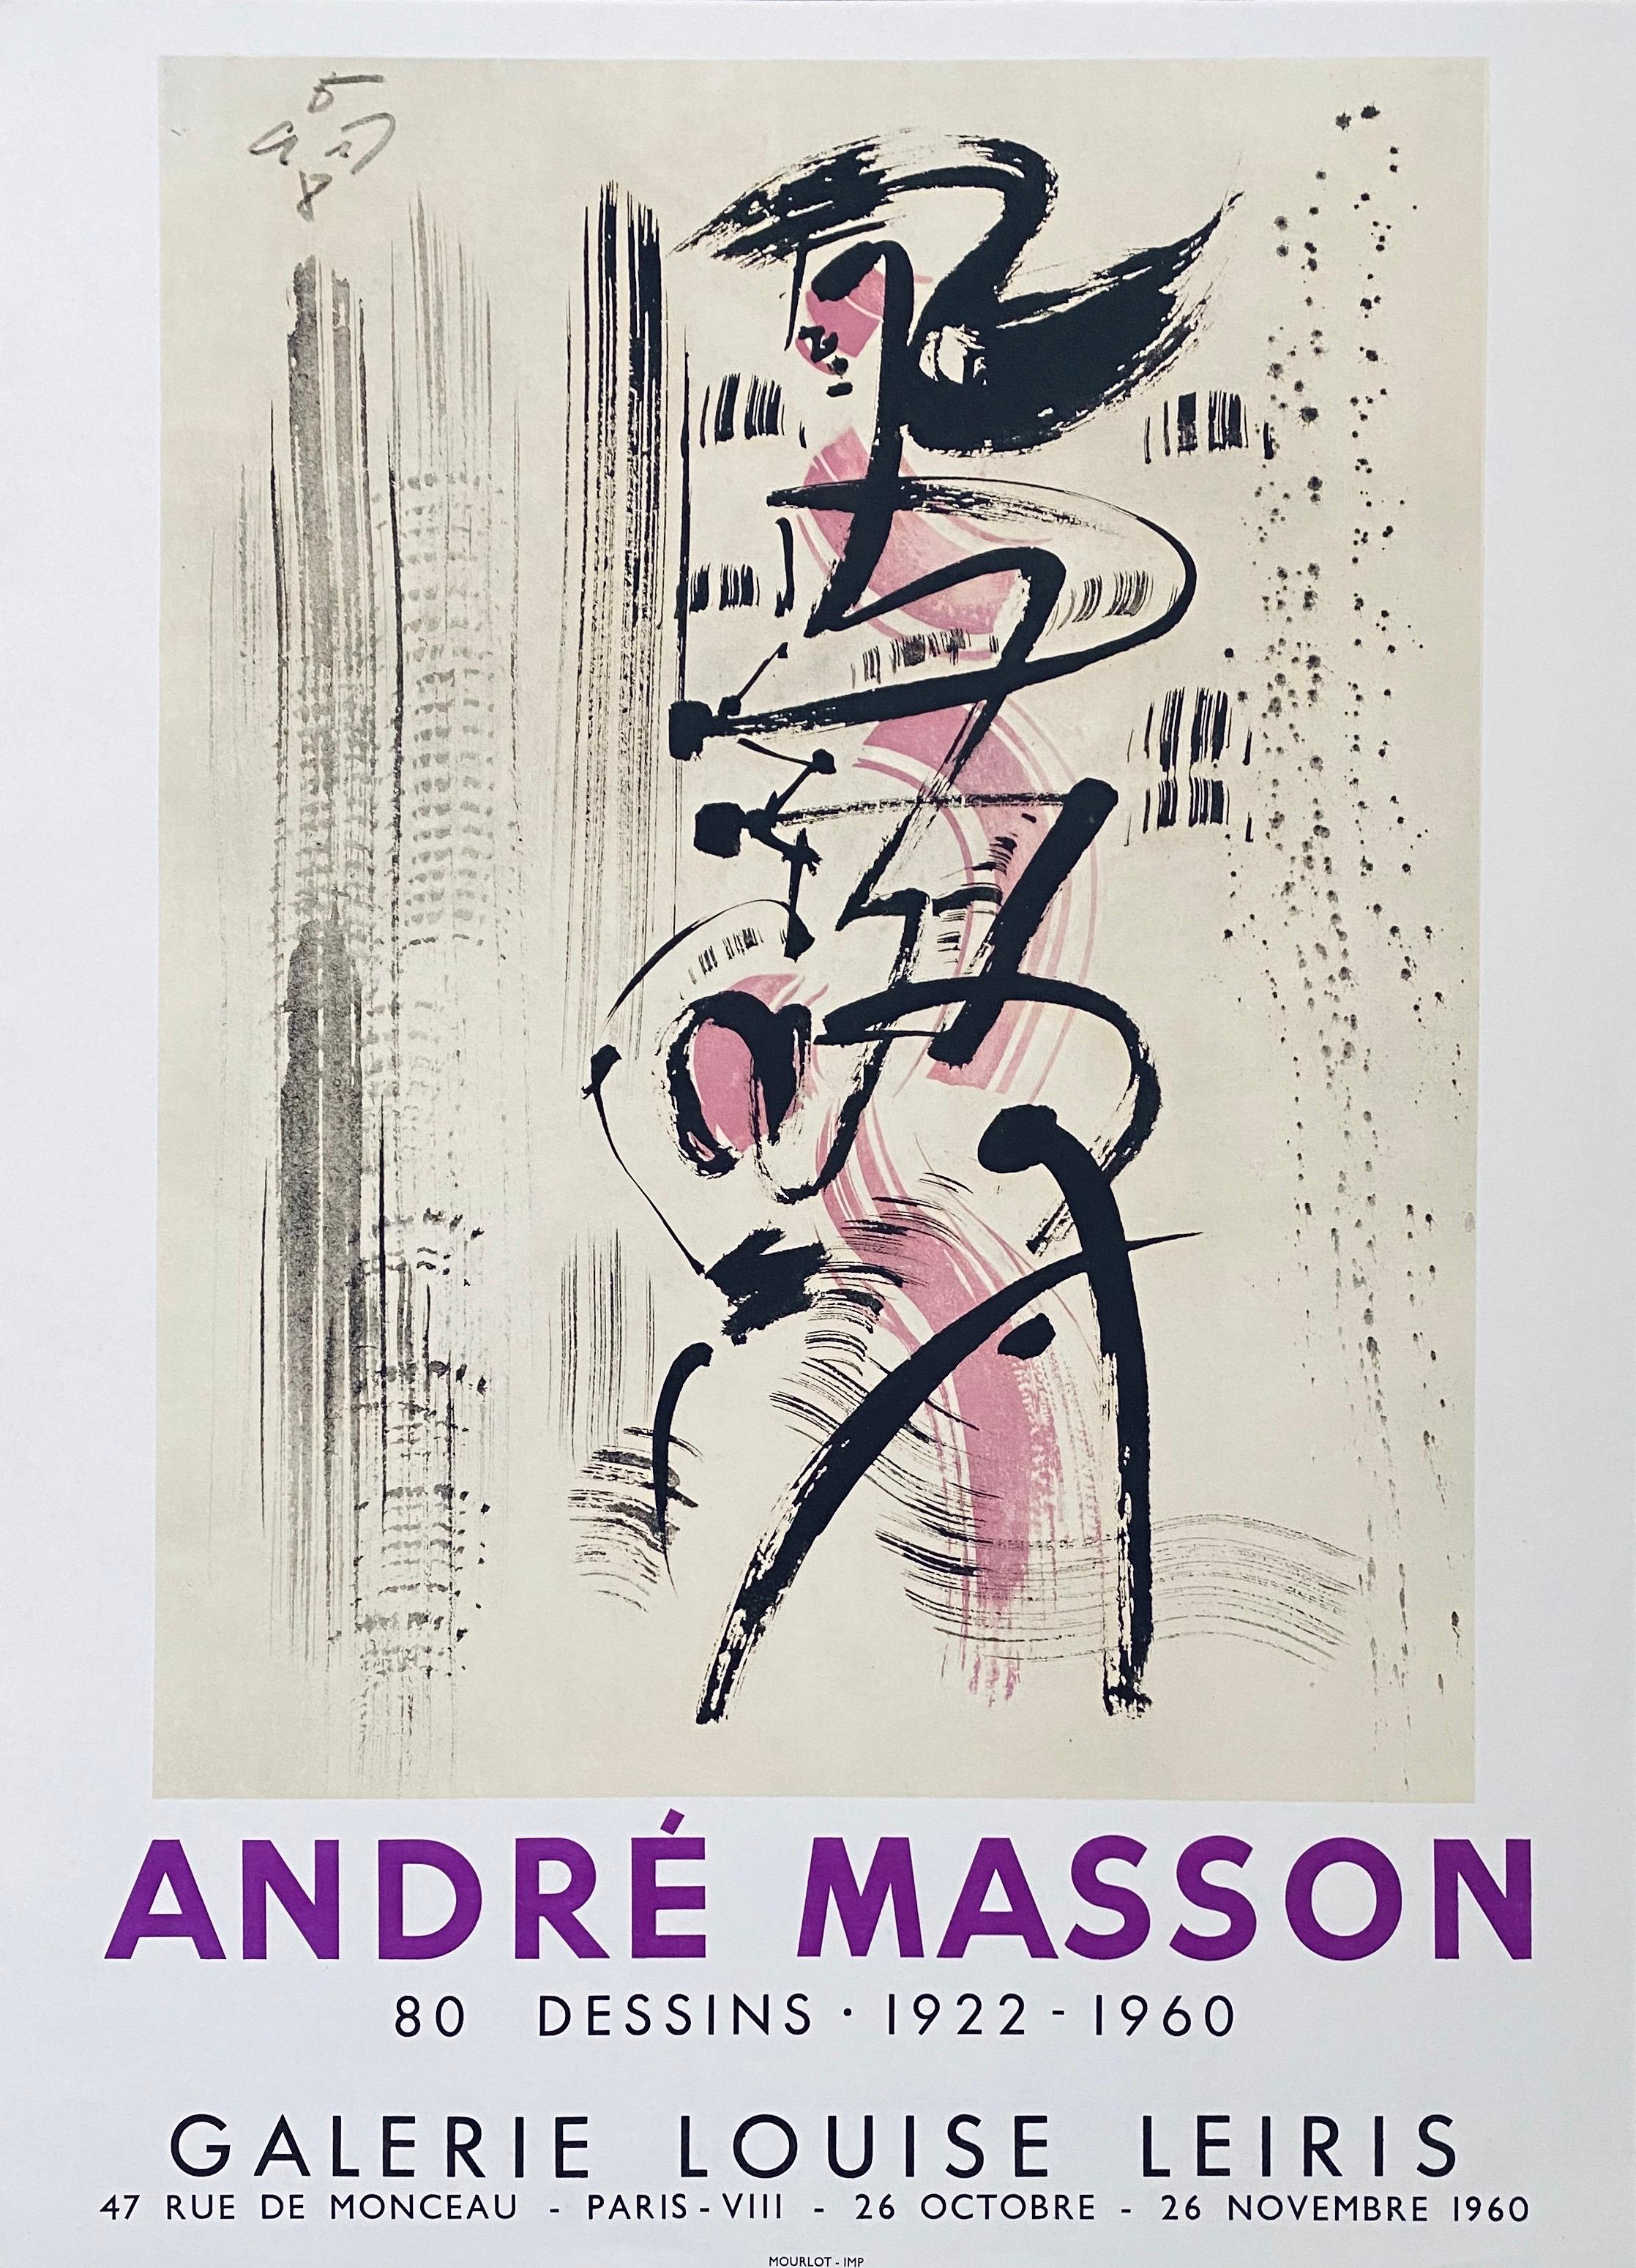 André-Aimé-René Masson (4 janvier 1896 - 28 octobre 1987) était un artiste français.

Masson est né à Balagny-sur-Thérain, dans l'Oise, mais lorsqu'il a huit ans, le travail de son père conduit la famille d'abord brièvement à Lille, puis à